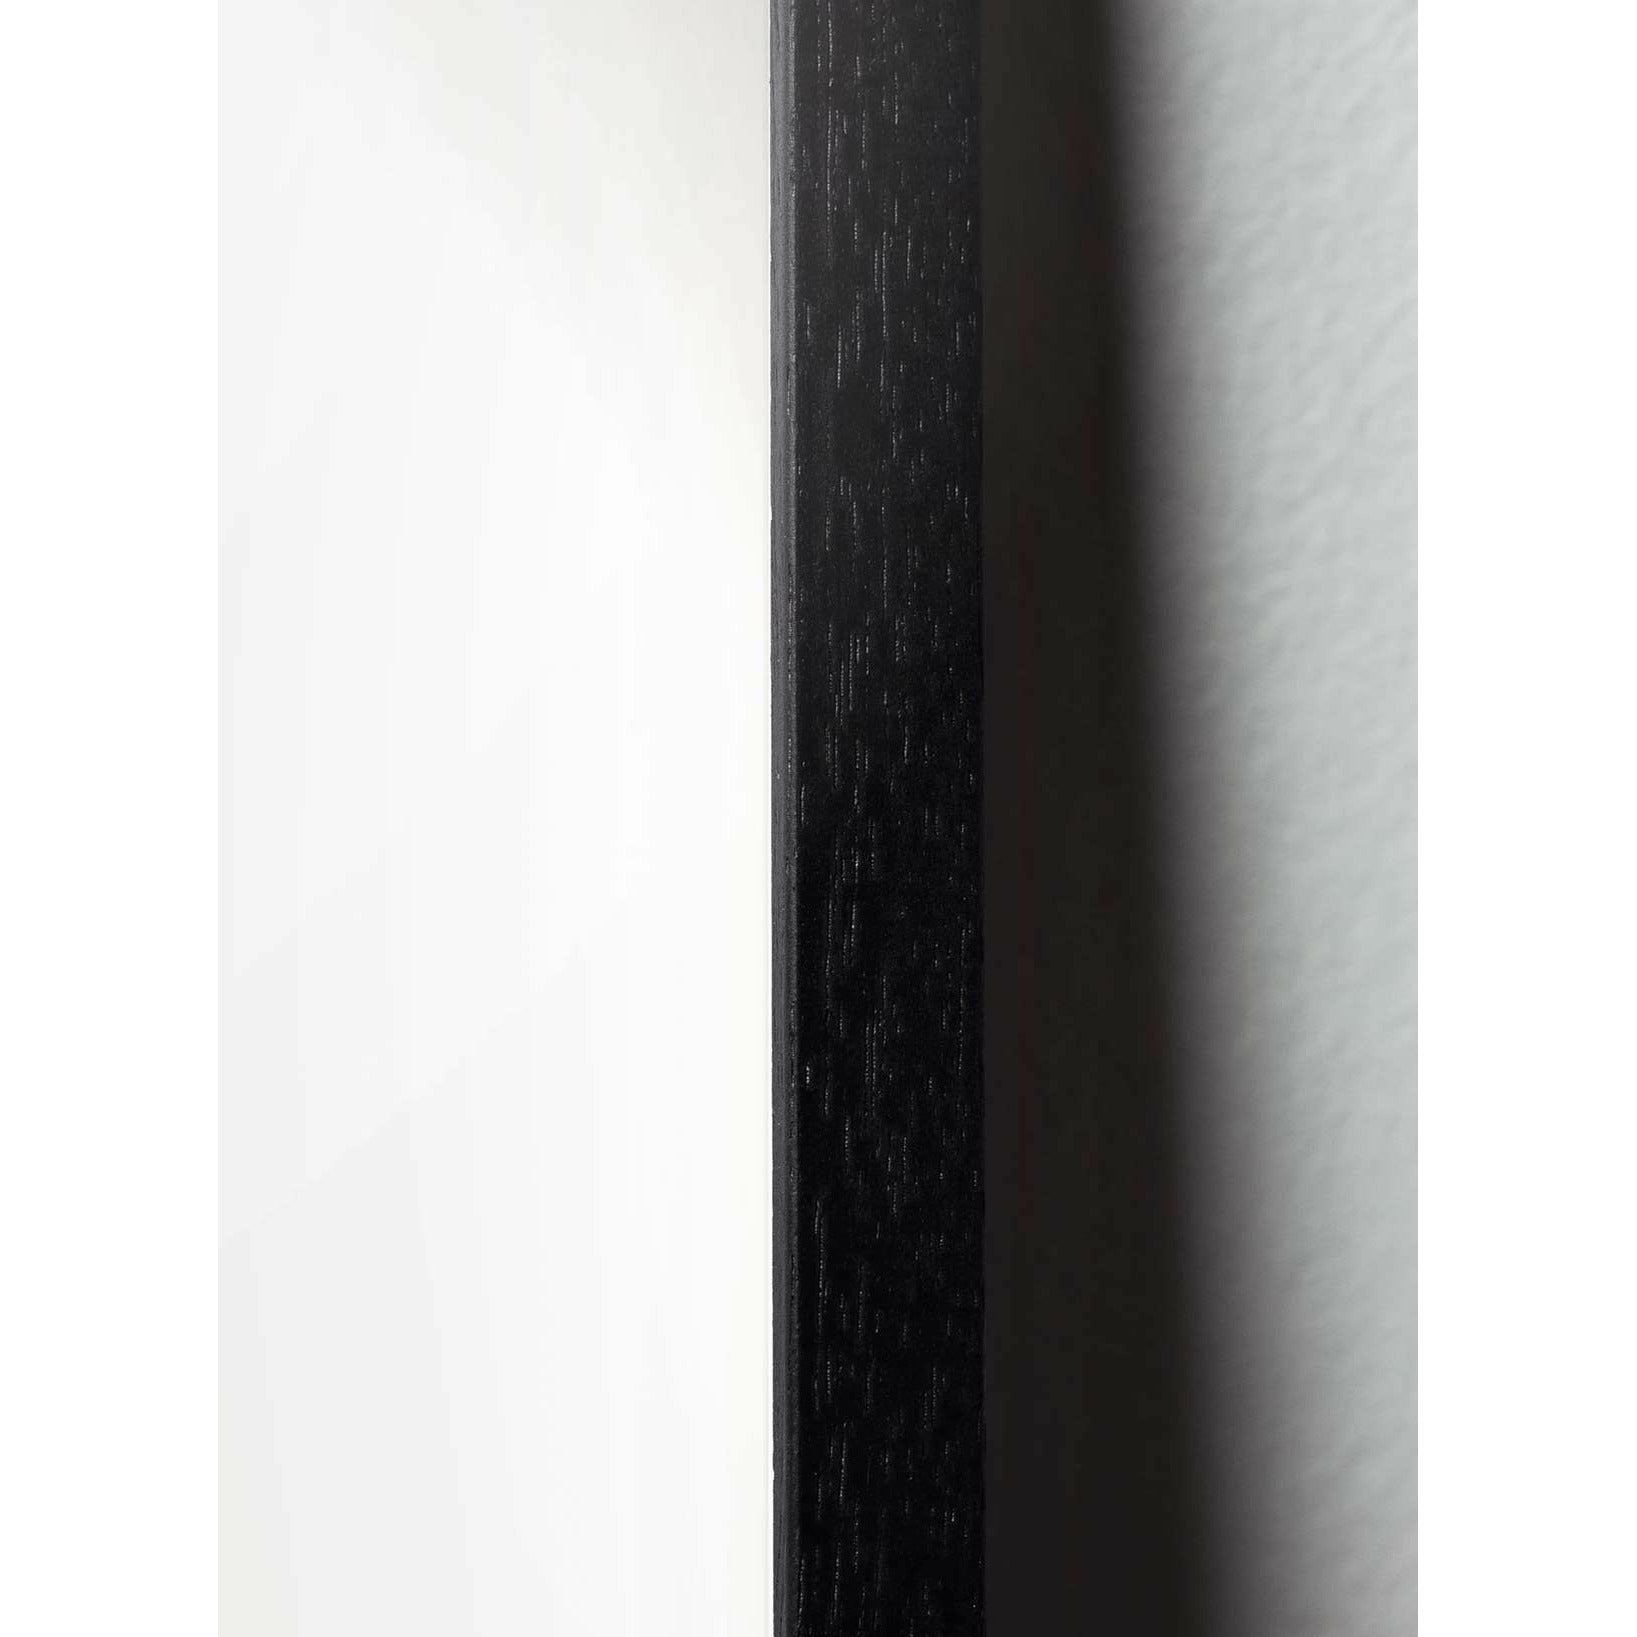 Brainchild Äggdesignikon affisch, ram i svart -målat trä 70x100 cm, grå